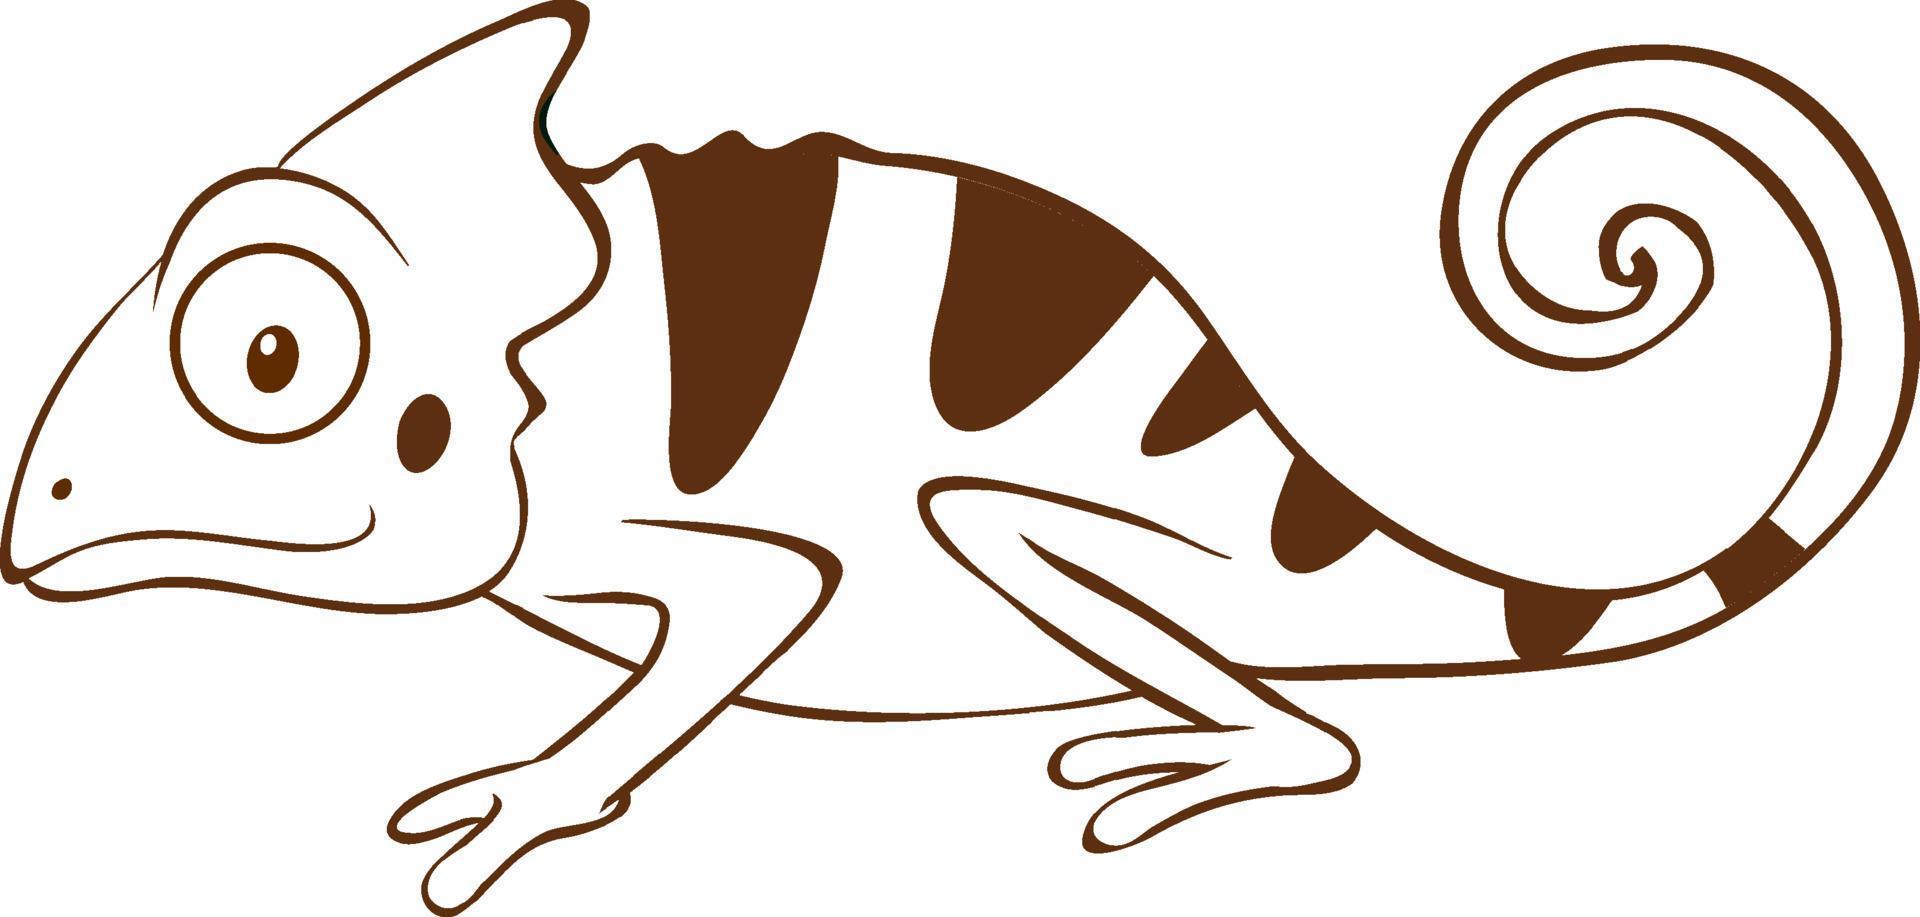 Chamäleon im einfachen Doodle-Stil auf weißem Hintergrund vektor